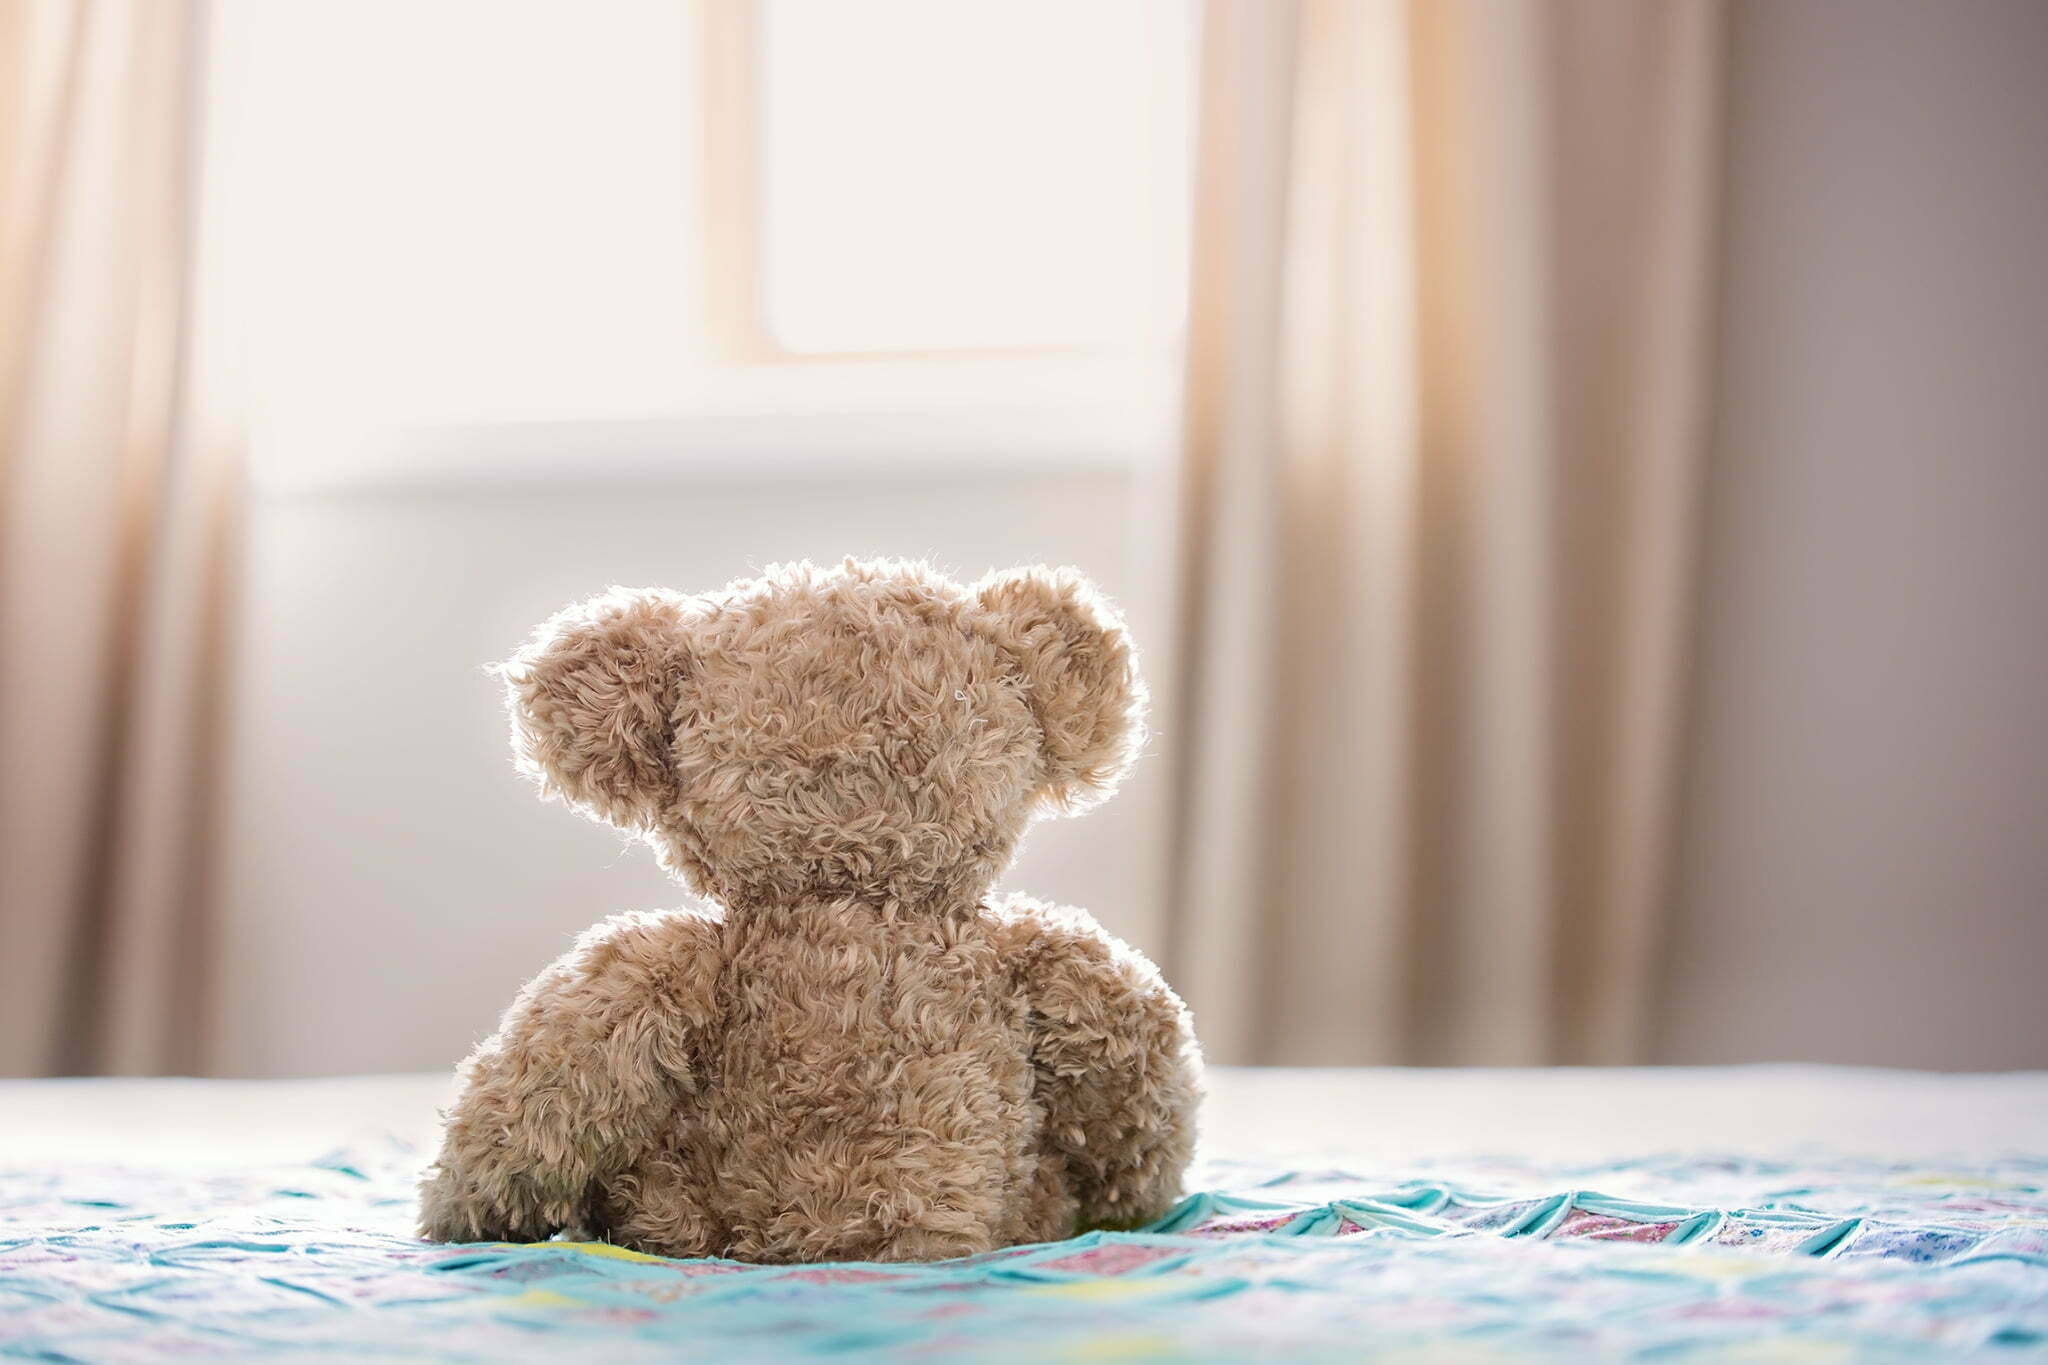 Terapia a Seduta Singola in ambito pediatrico: l’importanza di un approccio basato sui punti di forza per le famiglie che convivono con disturbi cronici